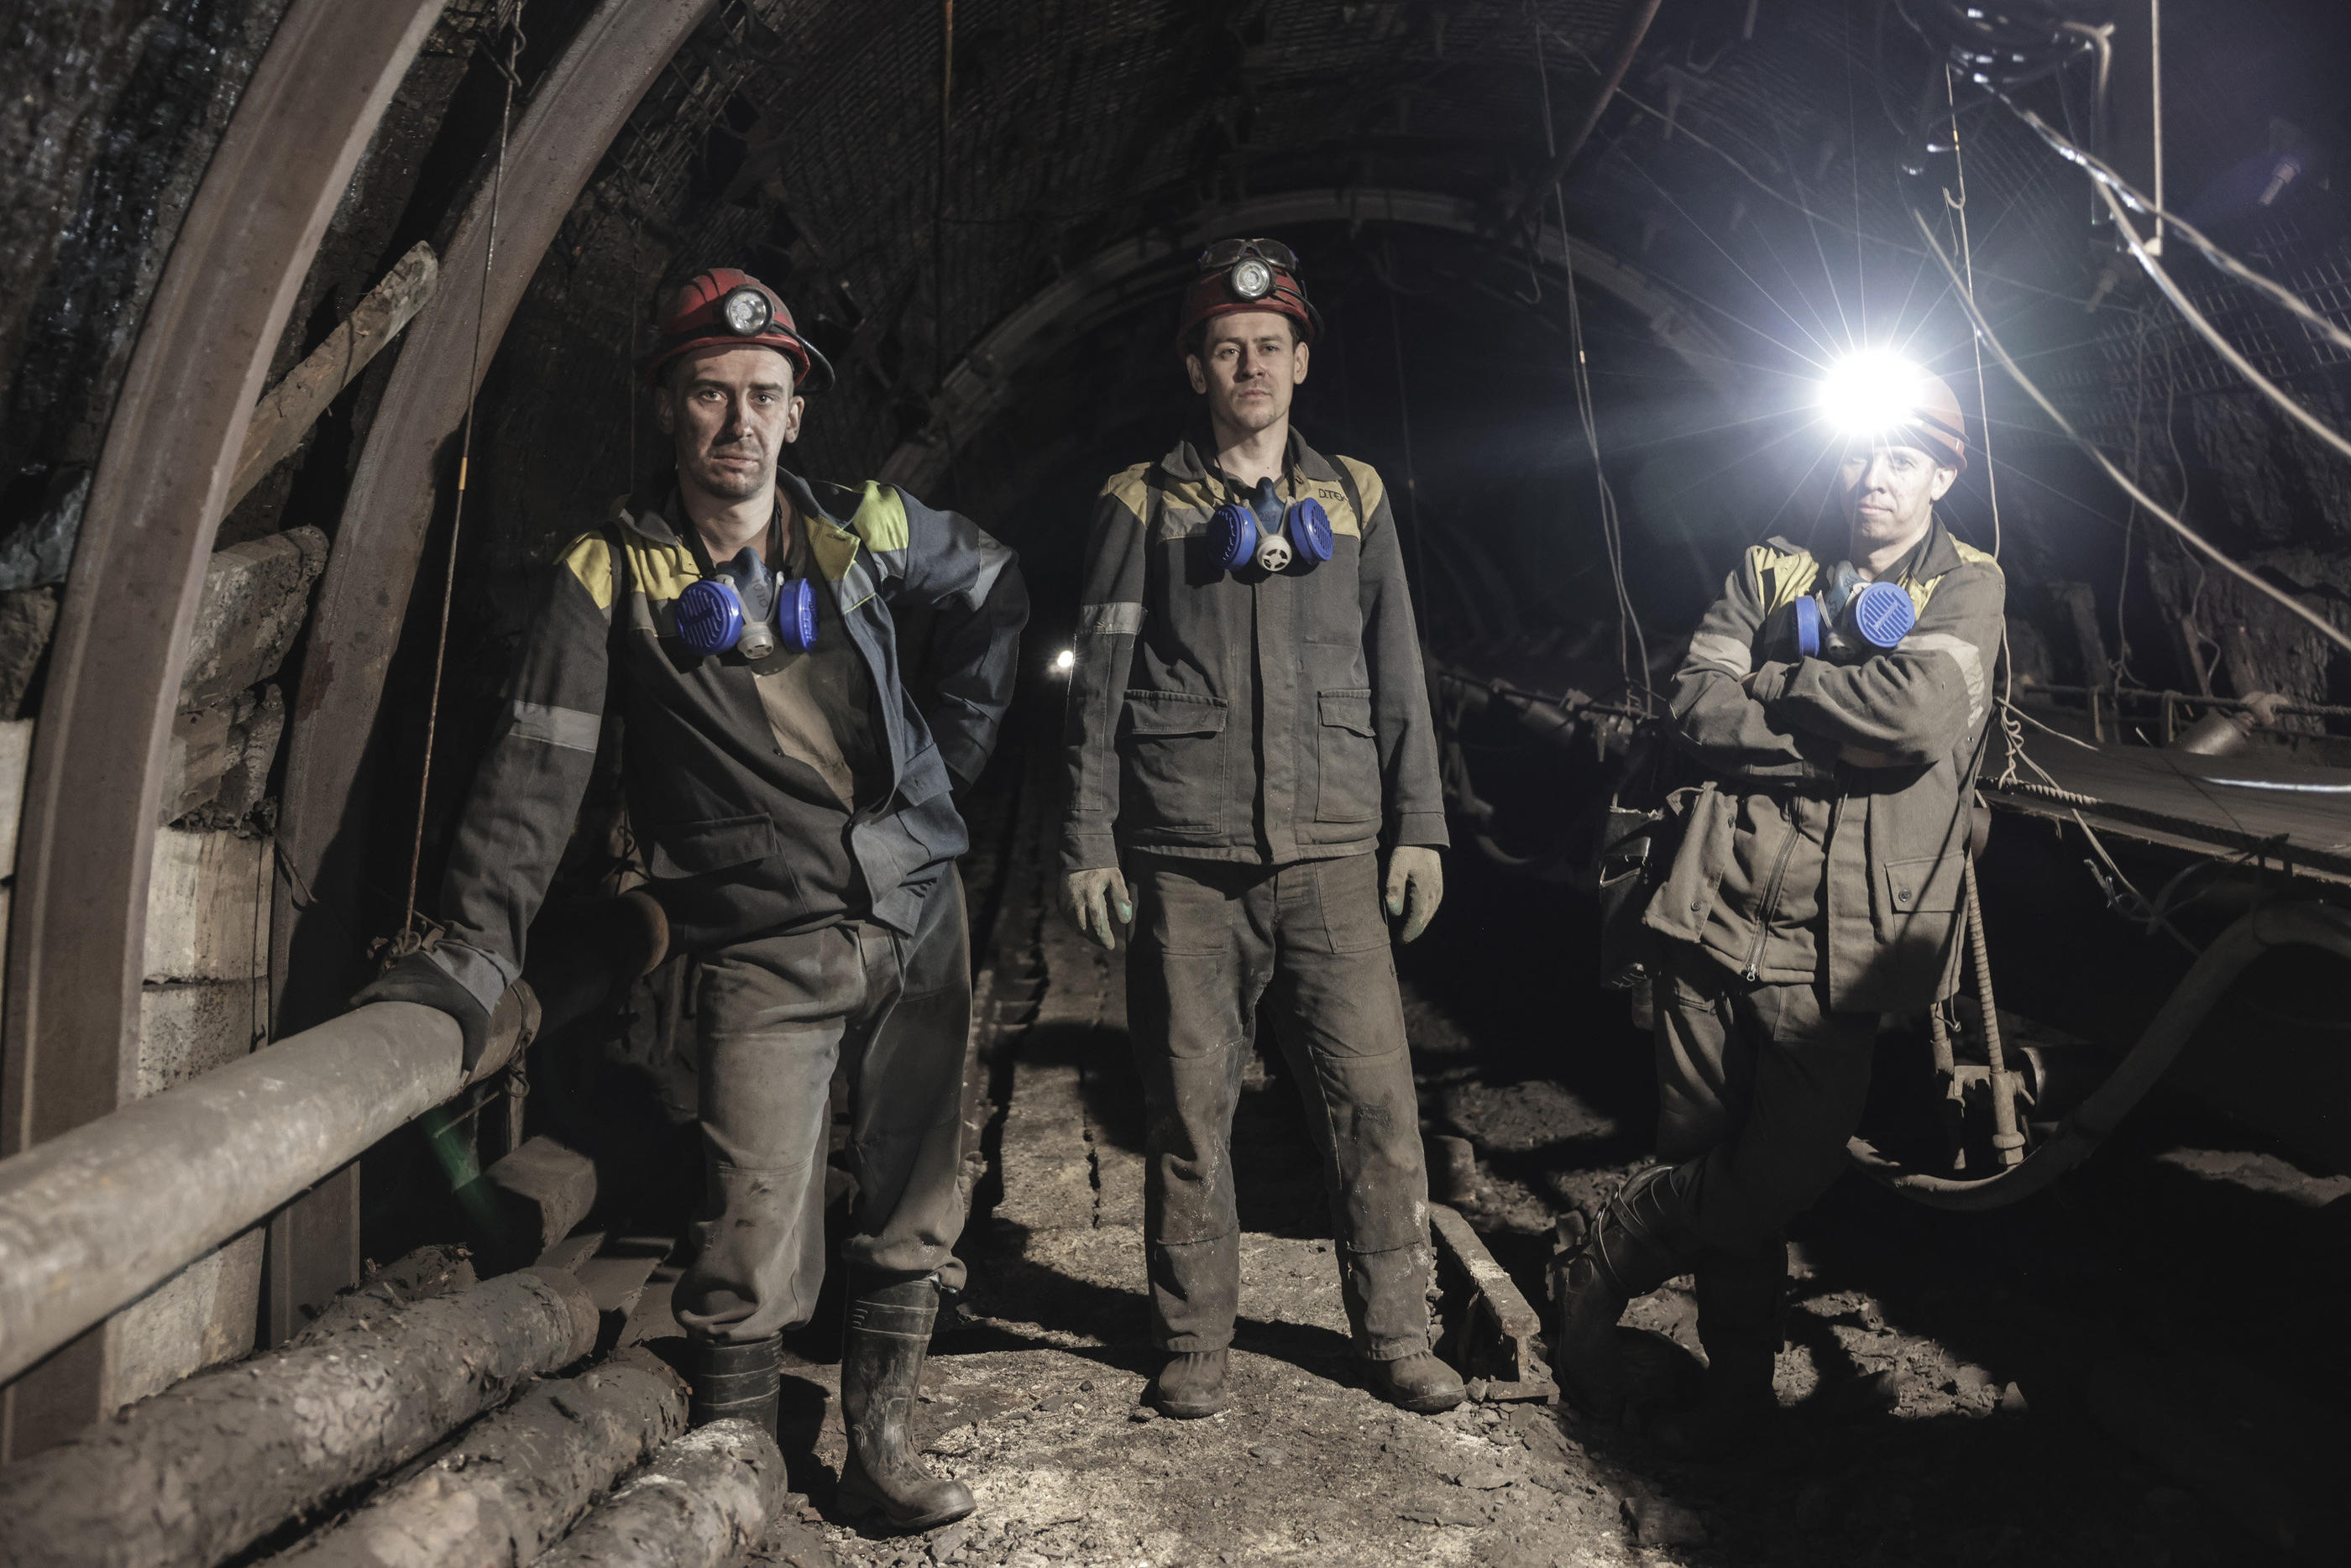 Alexandre, Pavlo et Rouslan au travail, lundi 19 décembre, dans une mine de charbon de la région de Dnipro en Ukraine. En pleine guerre, leur mission a pris une dimension stratégique. LP/Philippe de Poulpiquet